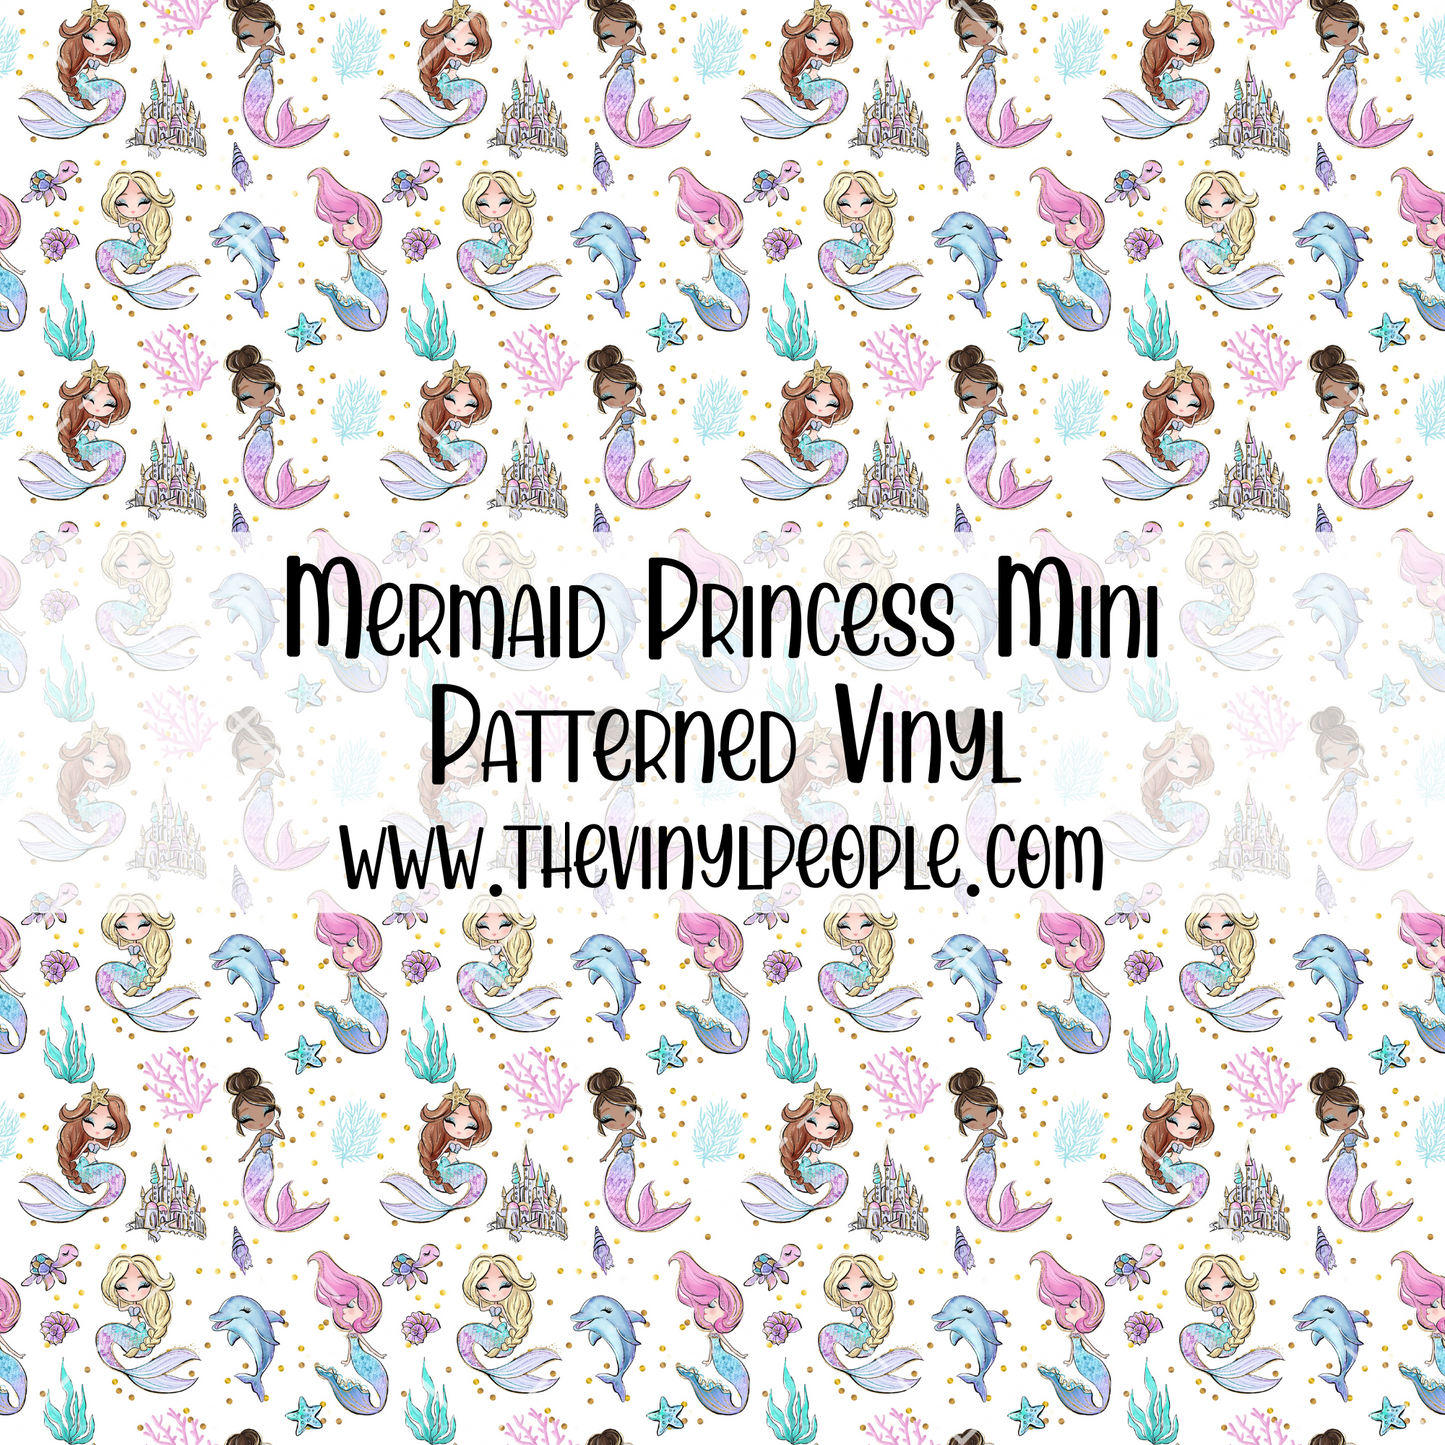 Mermaid Princess Patterned Vinyl